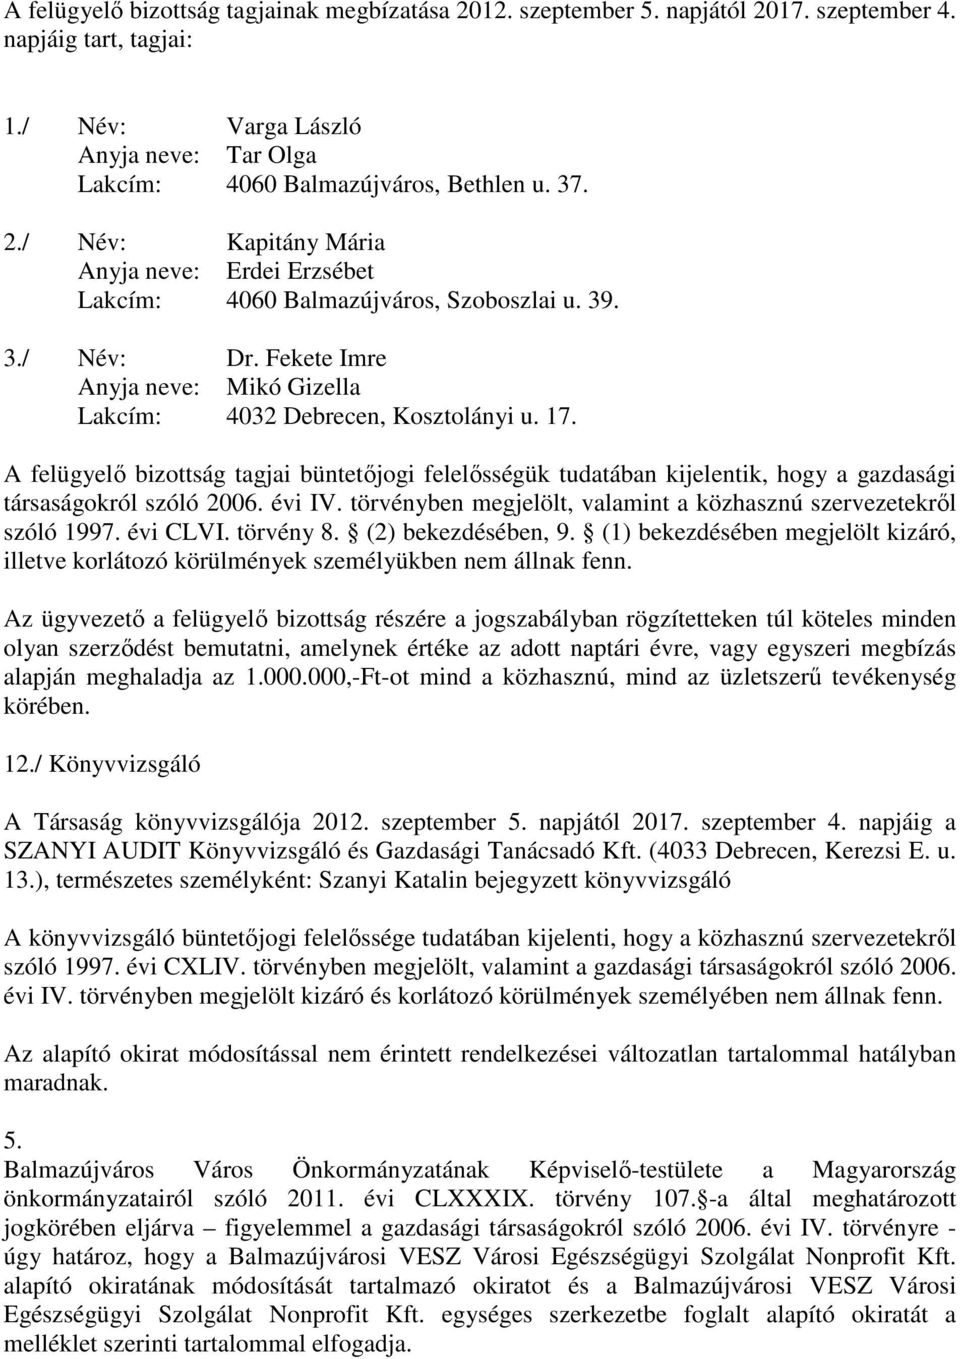 A felügyelı bizottság tagjai büntetıjogi felelısségük tudatában kijelentik, hogy a gazdasági társaságokról szóló 2006. évi IV. törvényben megjelölt, valamint a közhasznú szervezetekrıl szóló 1997.